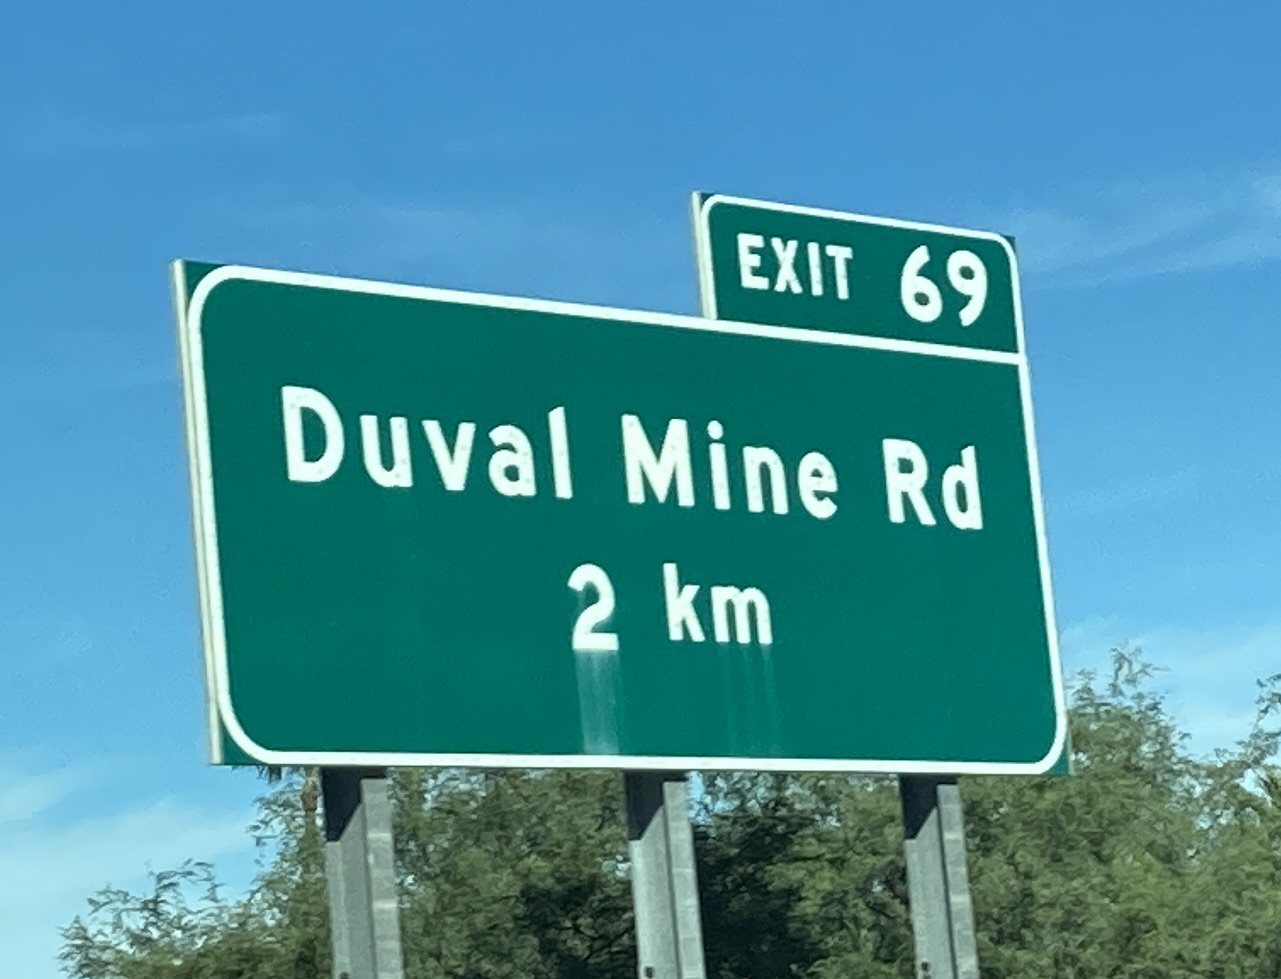 I19N/Duval Mine